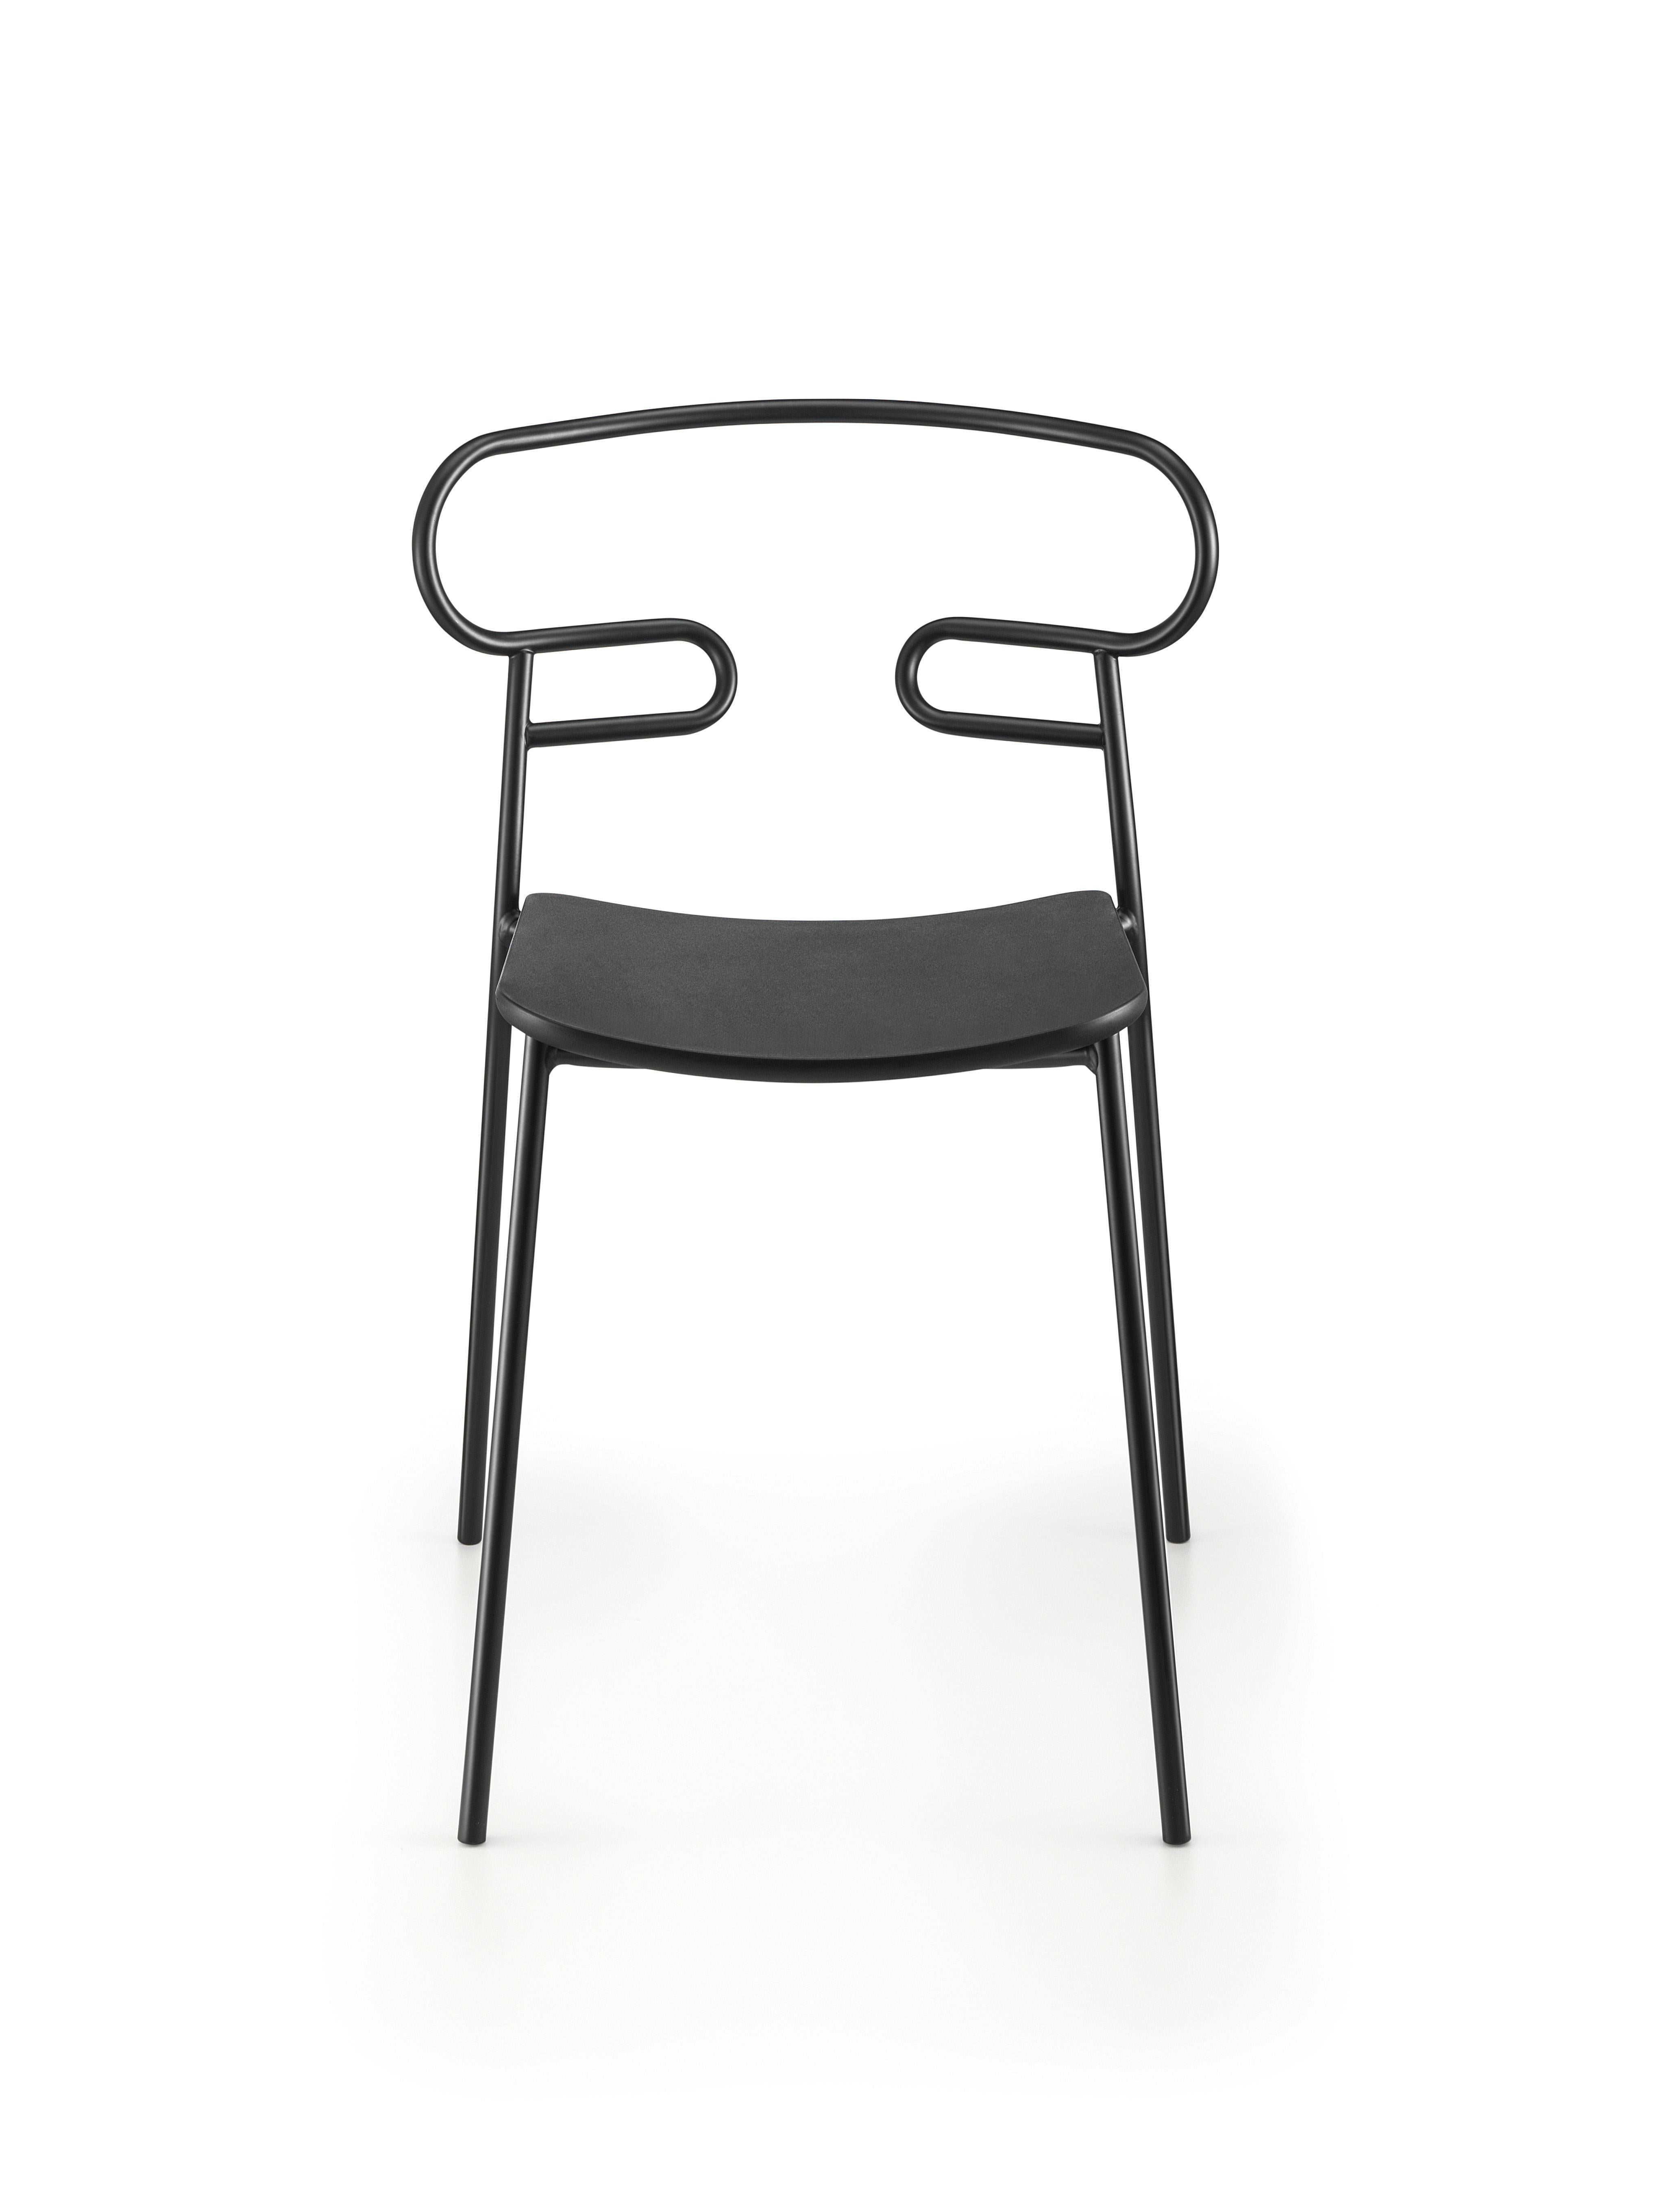 Die Stuhlkollektion Genoa des talentierten Jungdesigners Cesare Ehr, die einen Hocker und einen Stuhl mit Armlehnen umfasst, ist auch in einer Version für den Außenbereich erhältlich. Das Unterscheidungsmerkmal ist die einlinige Rückenlehne, die